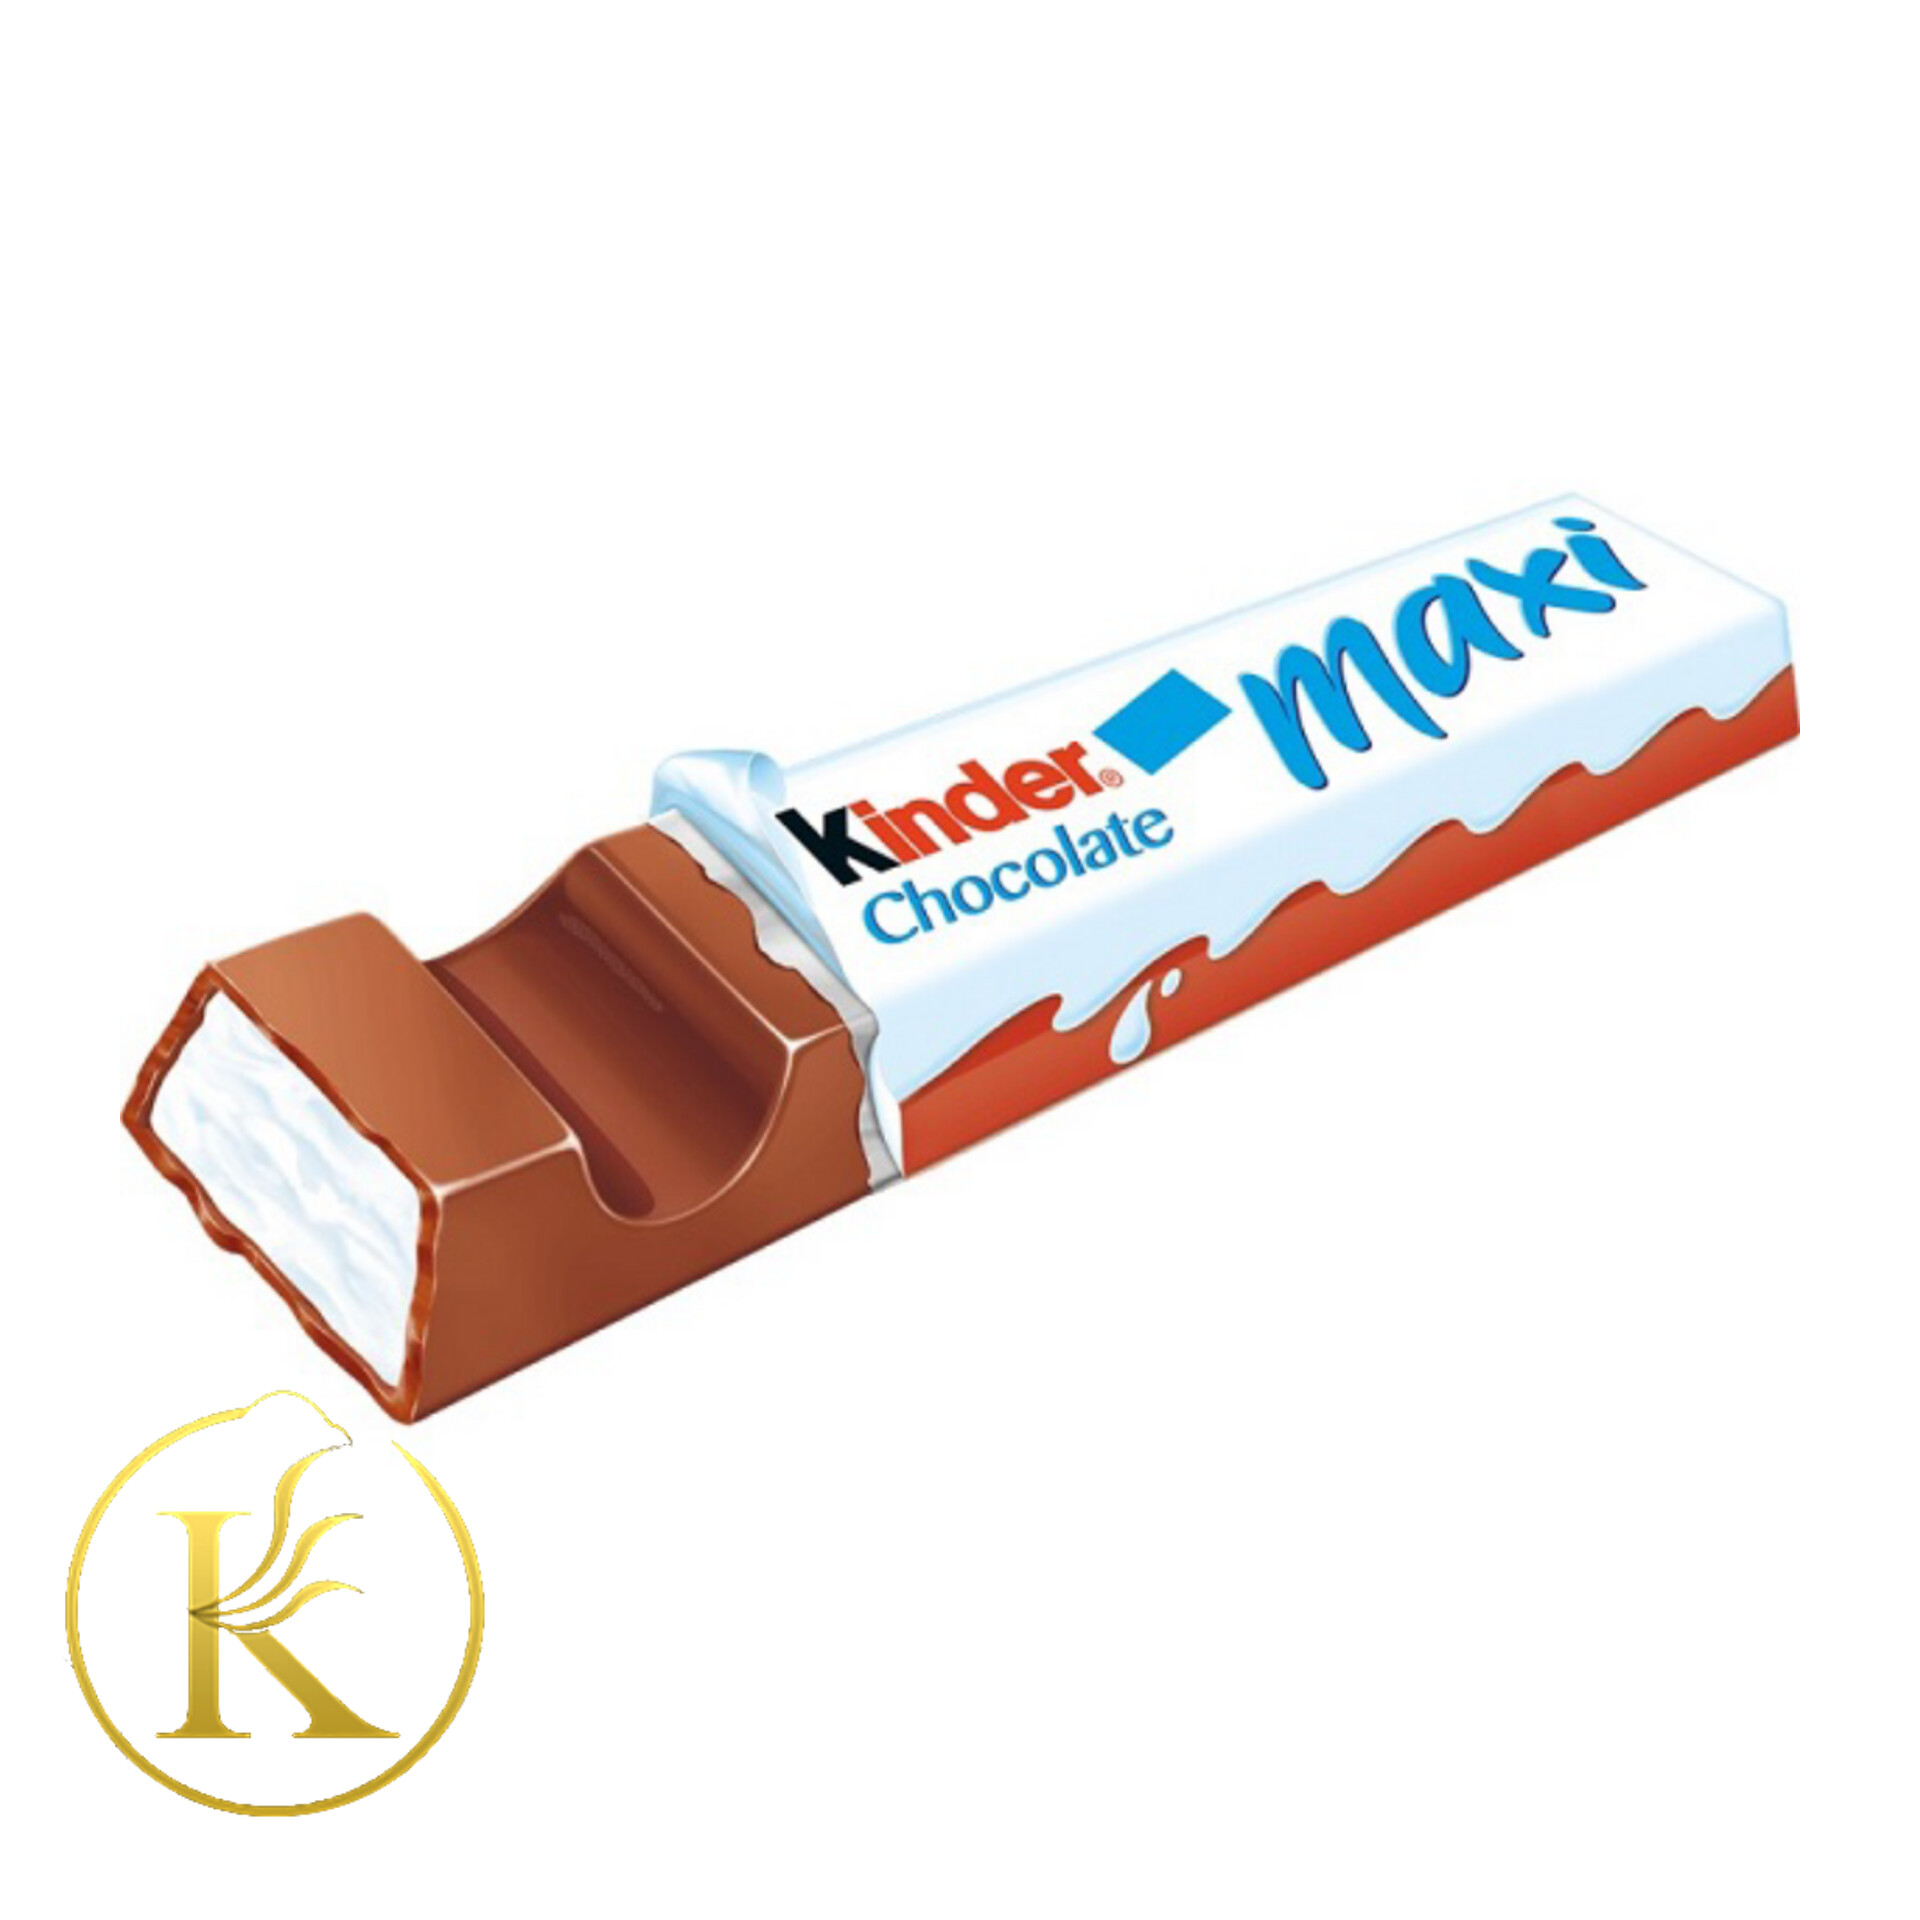 شکلات کیندر مکسی (21 گرم)Kinder Maxi